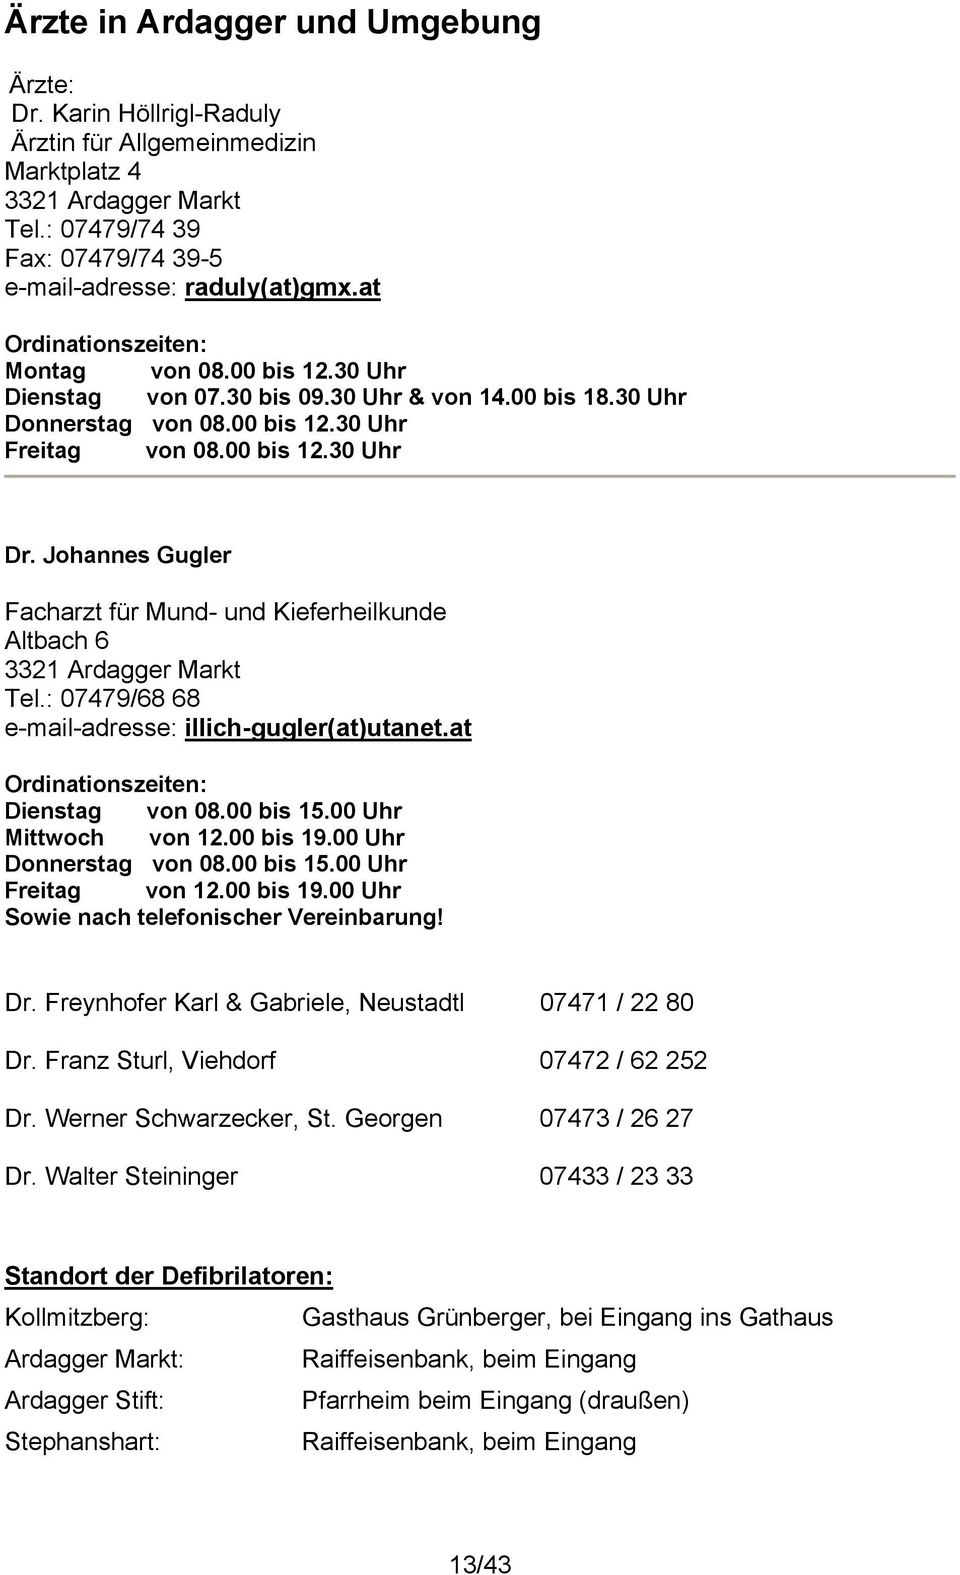 Johannes Gugler Facharzt für Mund- und Kieferheilkunde Altbach 6 3321 Ardagger Markt Tel.: 07479/68 68 e-mail-adresse: illich-gugler(at)utanet.at Ordinationszeiten: Dienstag von 08.00 bis 15.